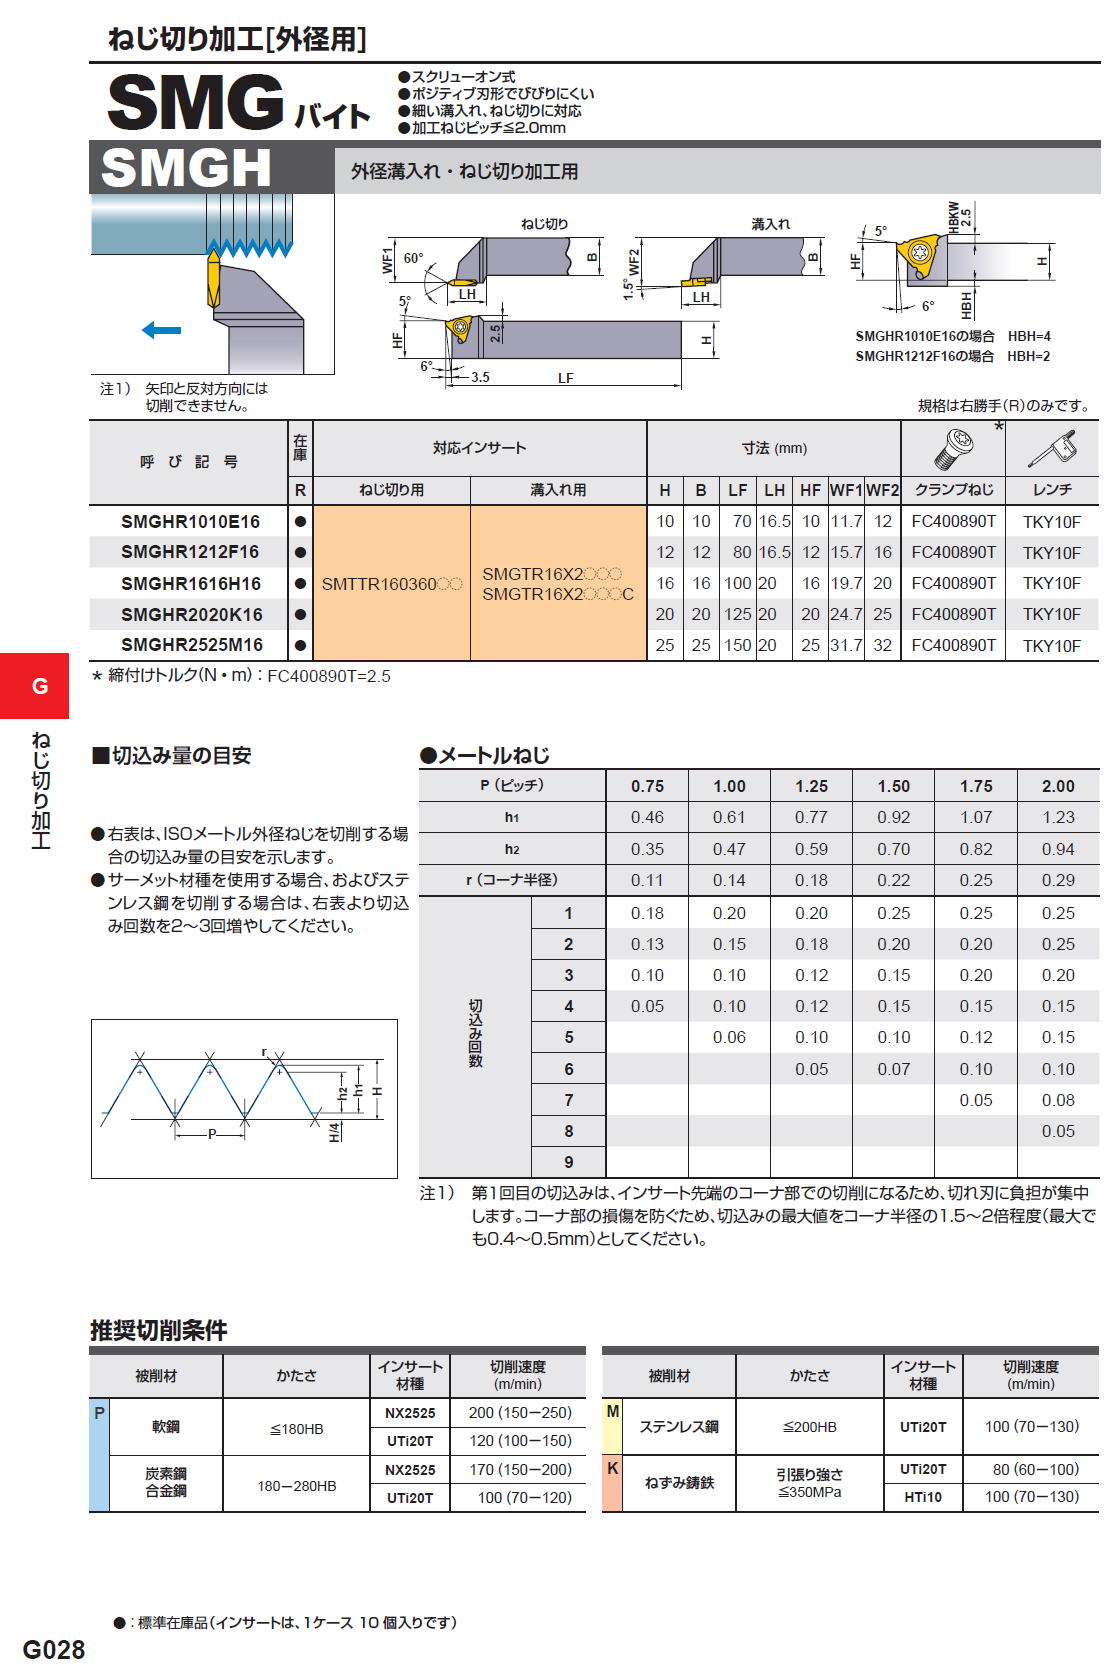 □三菱 難削材旋削加工用インサート MP9025 CCGT06 × R0.1 MP9025